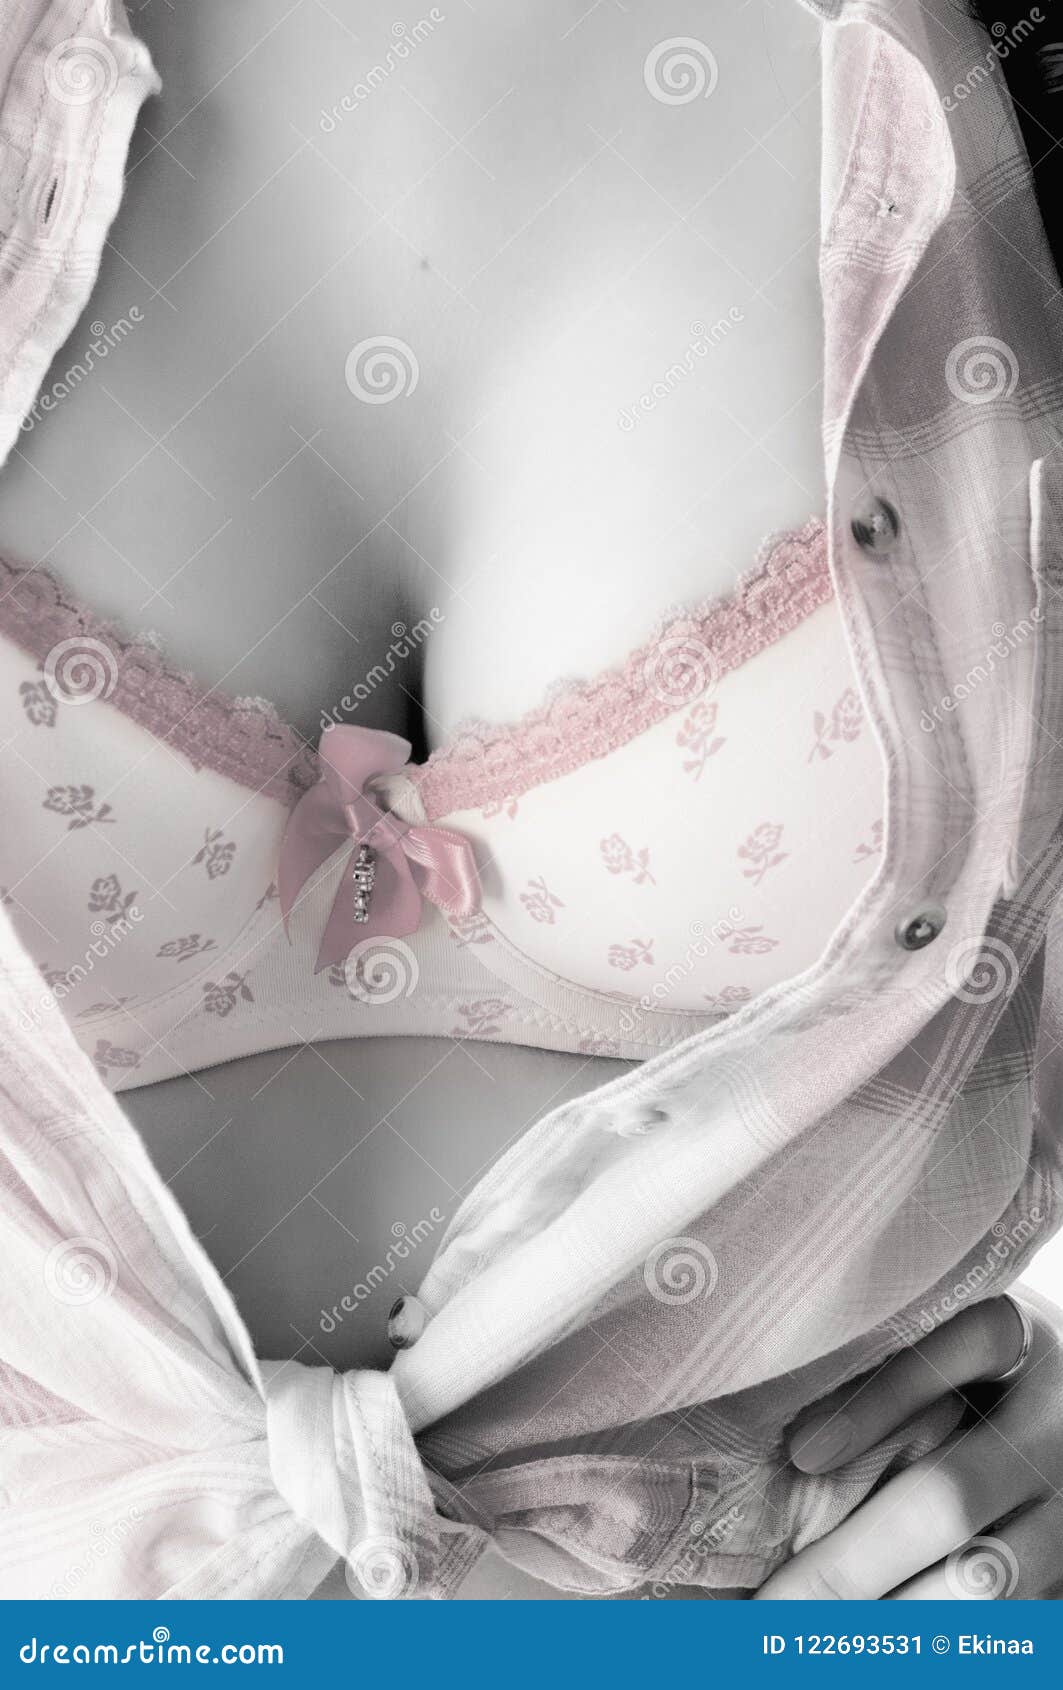 Women in pink bra tit stock Image of large, erotic - 122693531